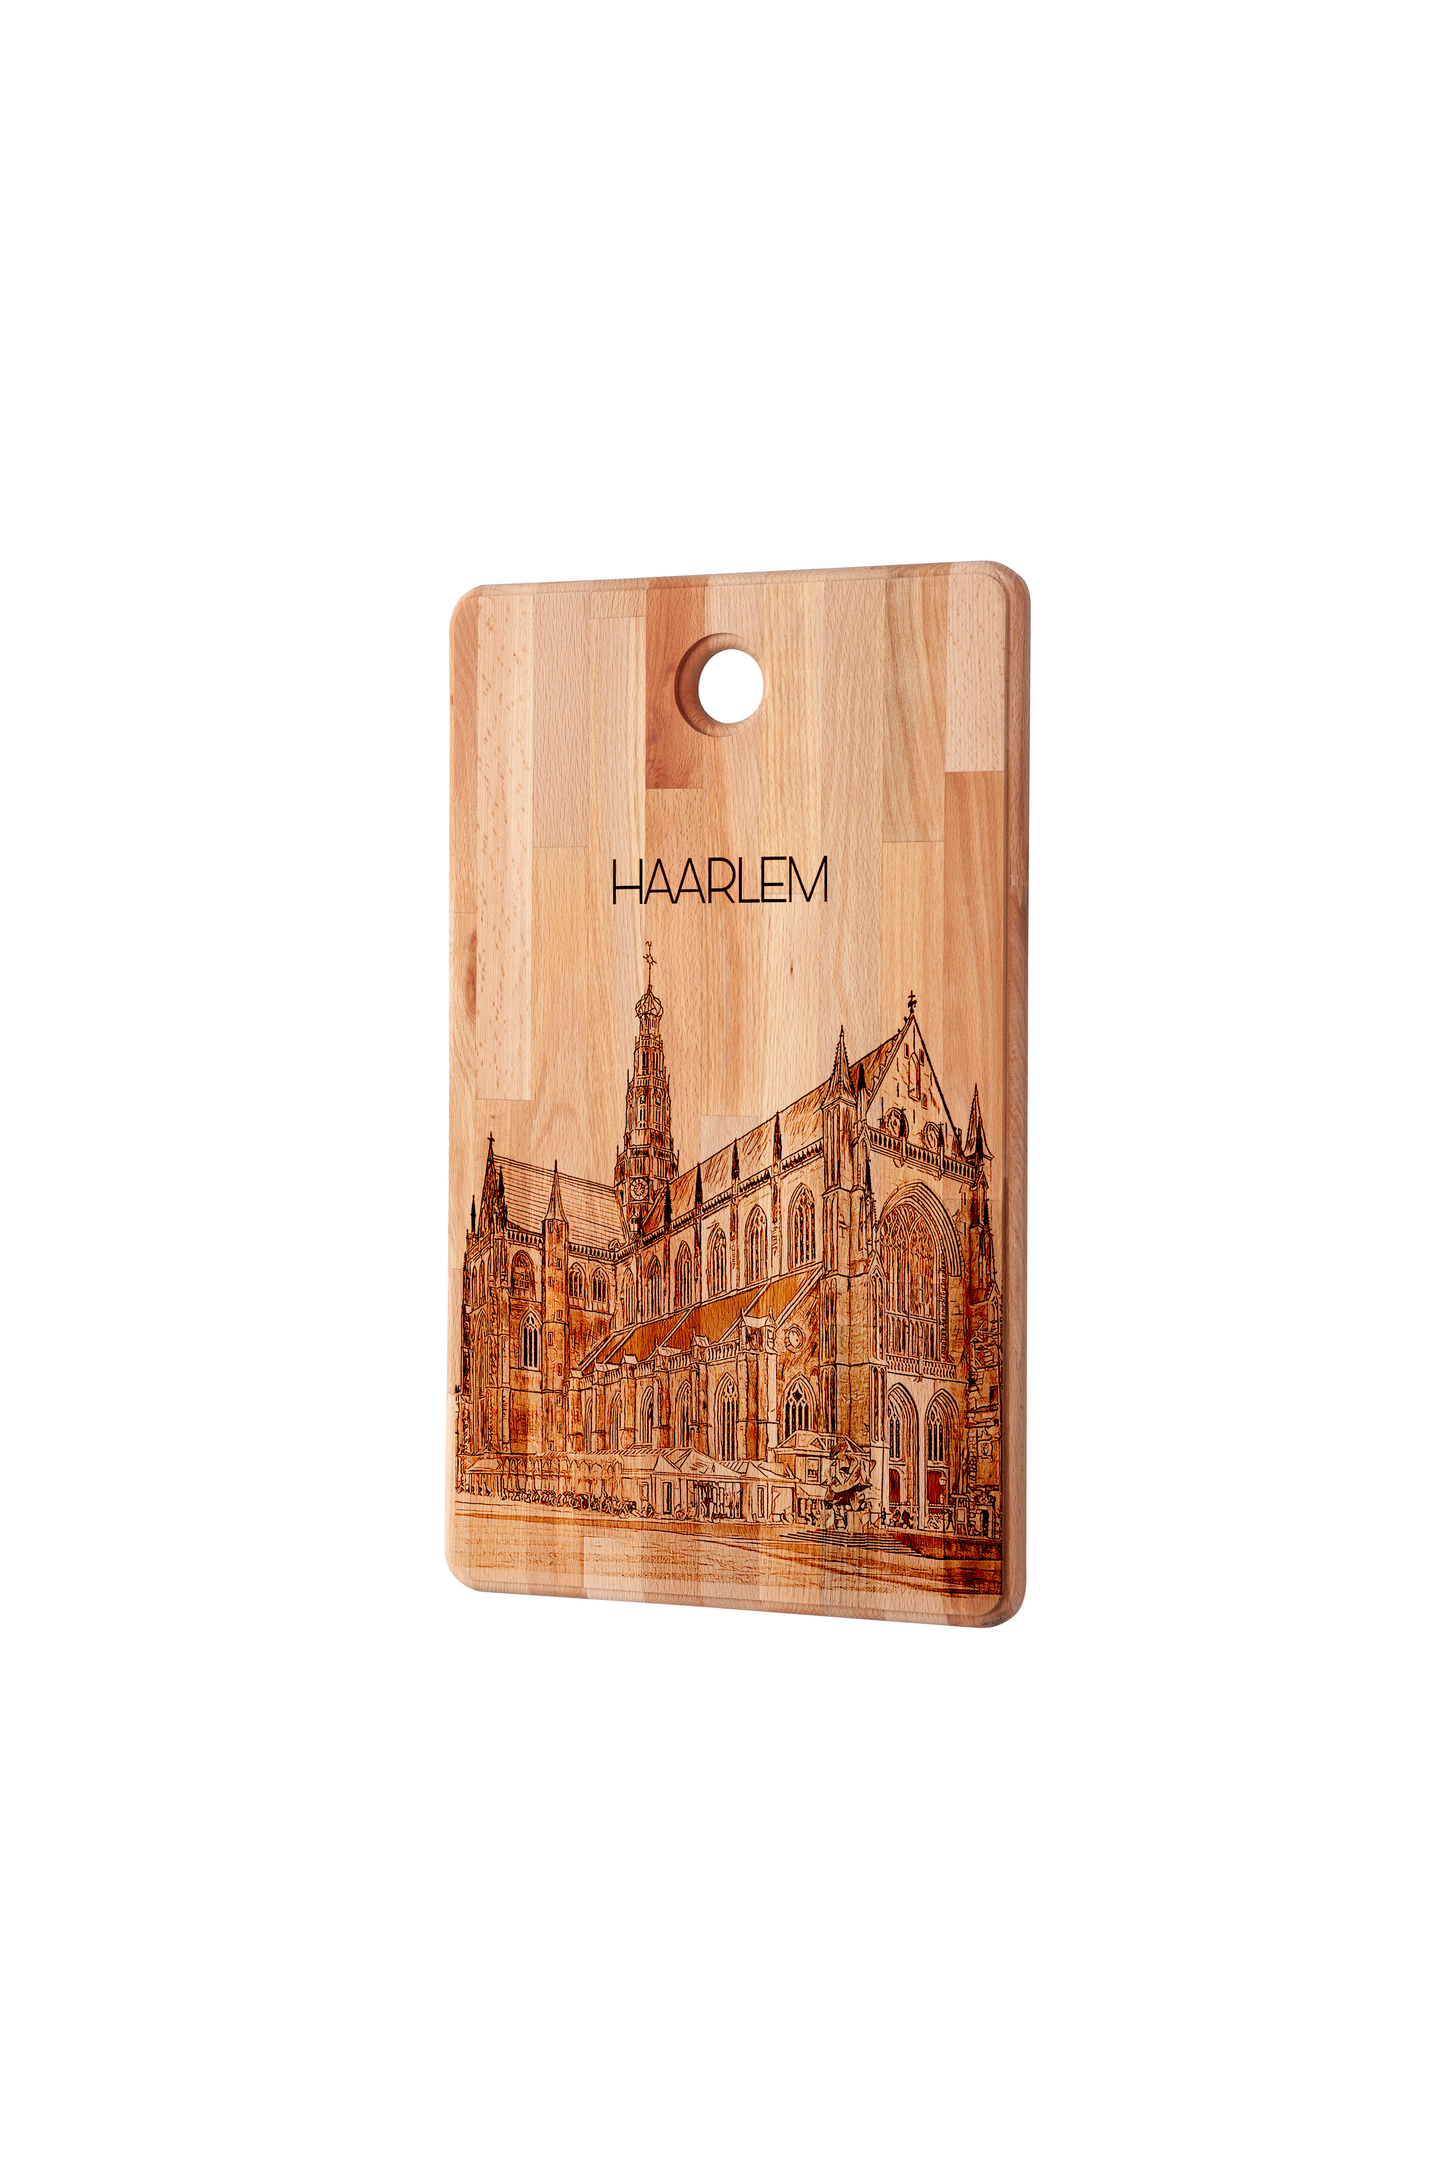 Haarlem, Grote Kerk, cutting board, side view